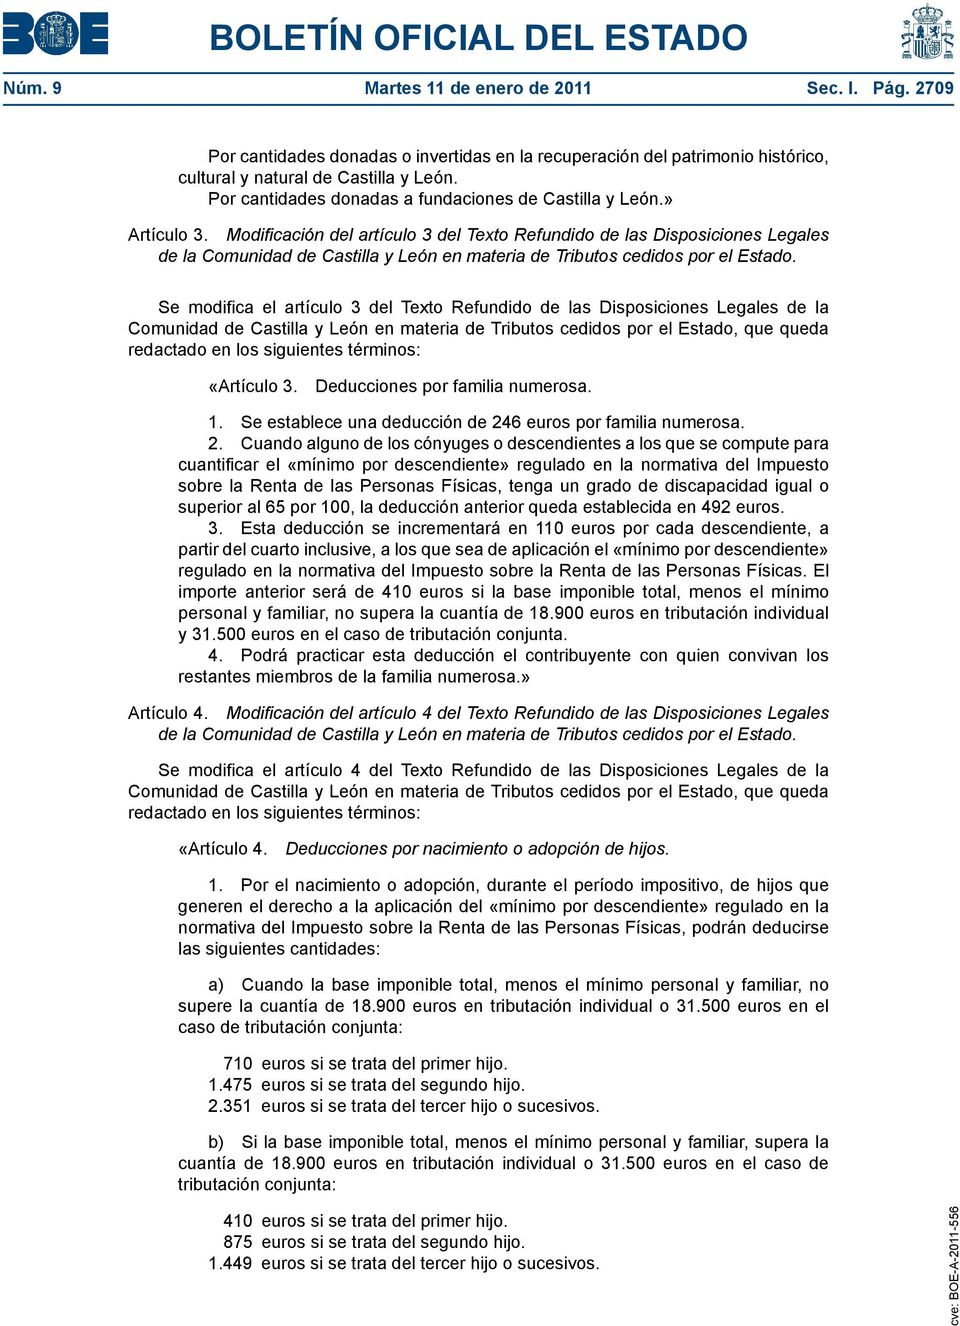 Modificación del artículo 3 del Texto Refundido de las Disposiciones Legales de la Comunidad de Castilla y León en materia de Tributos cedidos por el Estado.